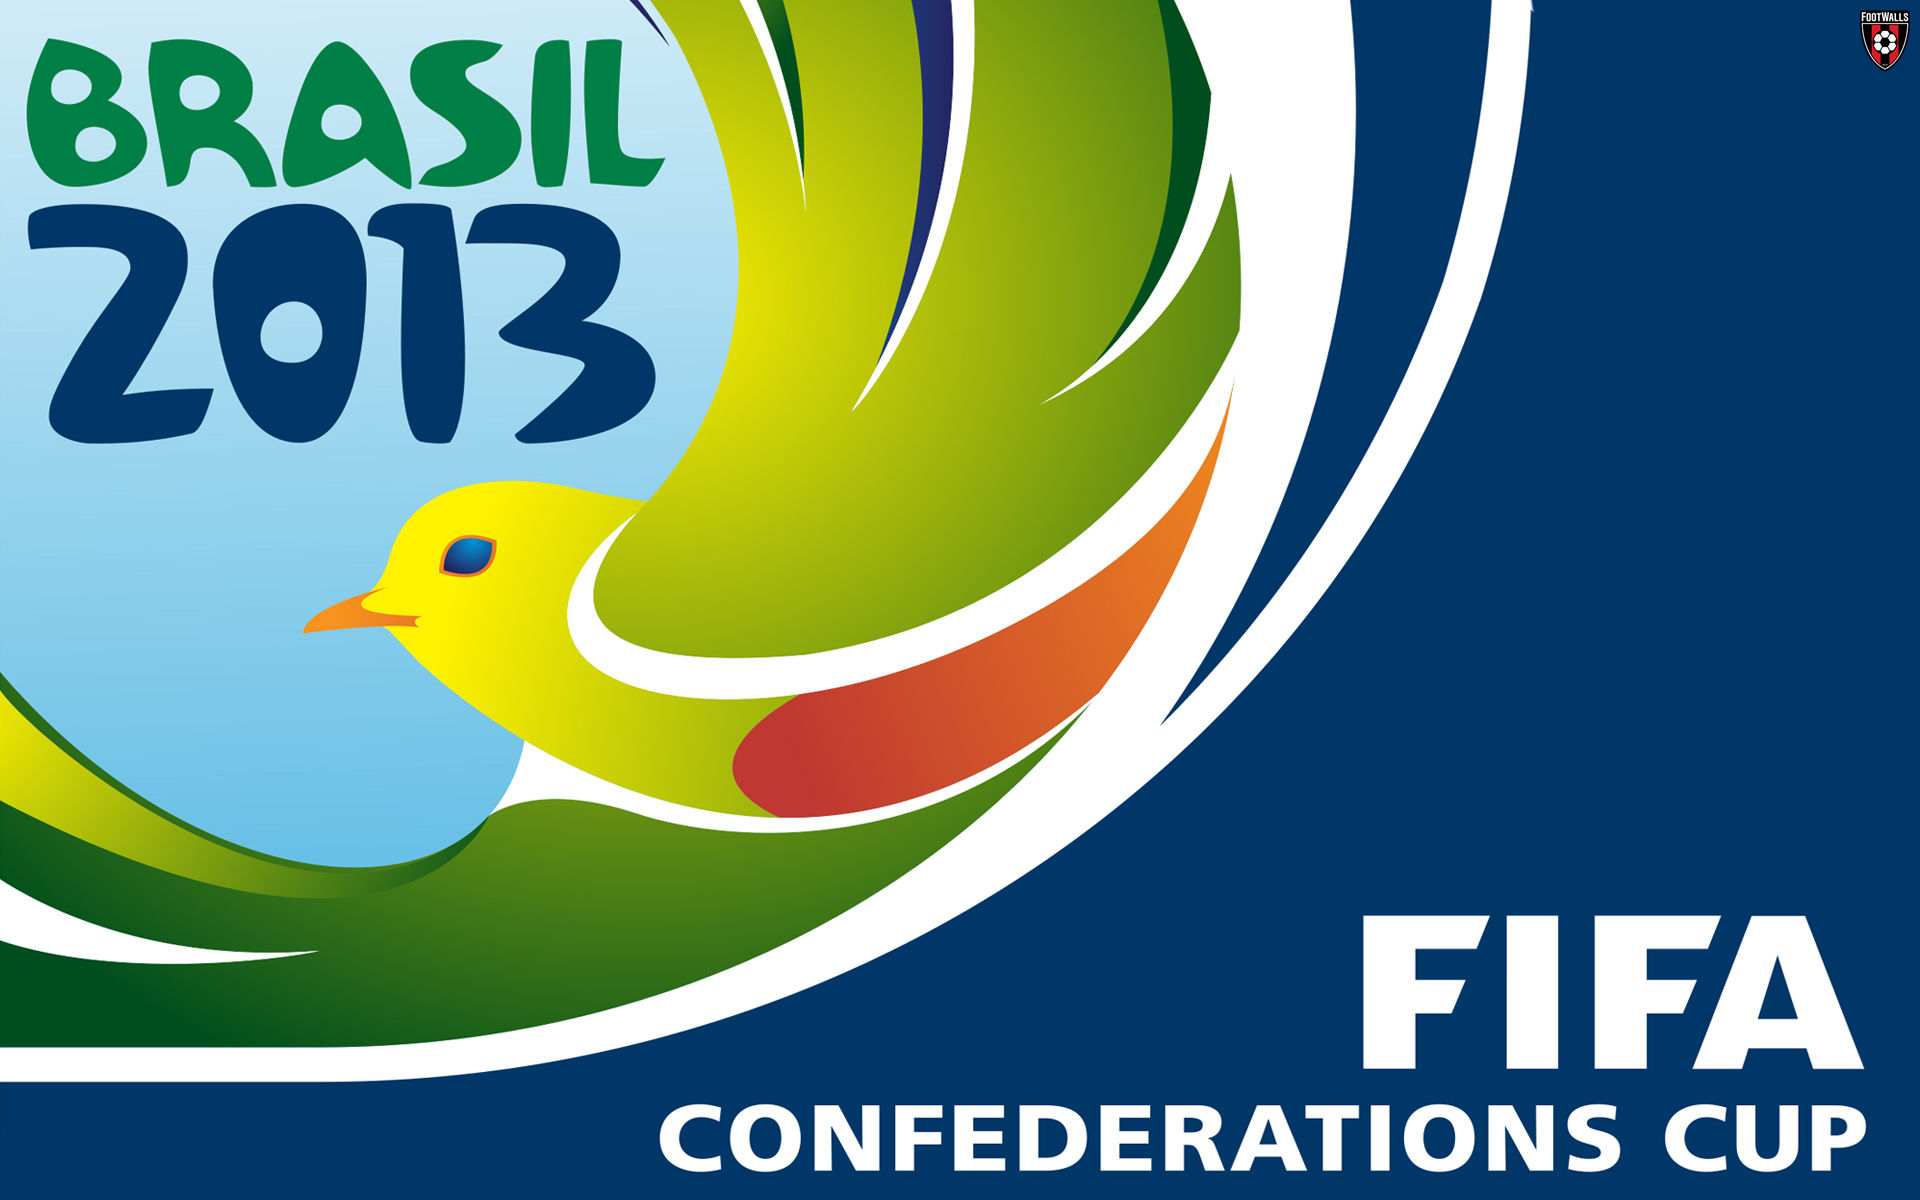 F I F A Confederations Cup Wallpaper